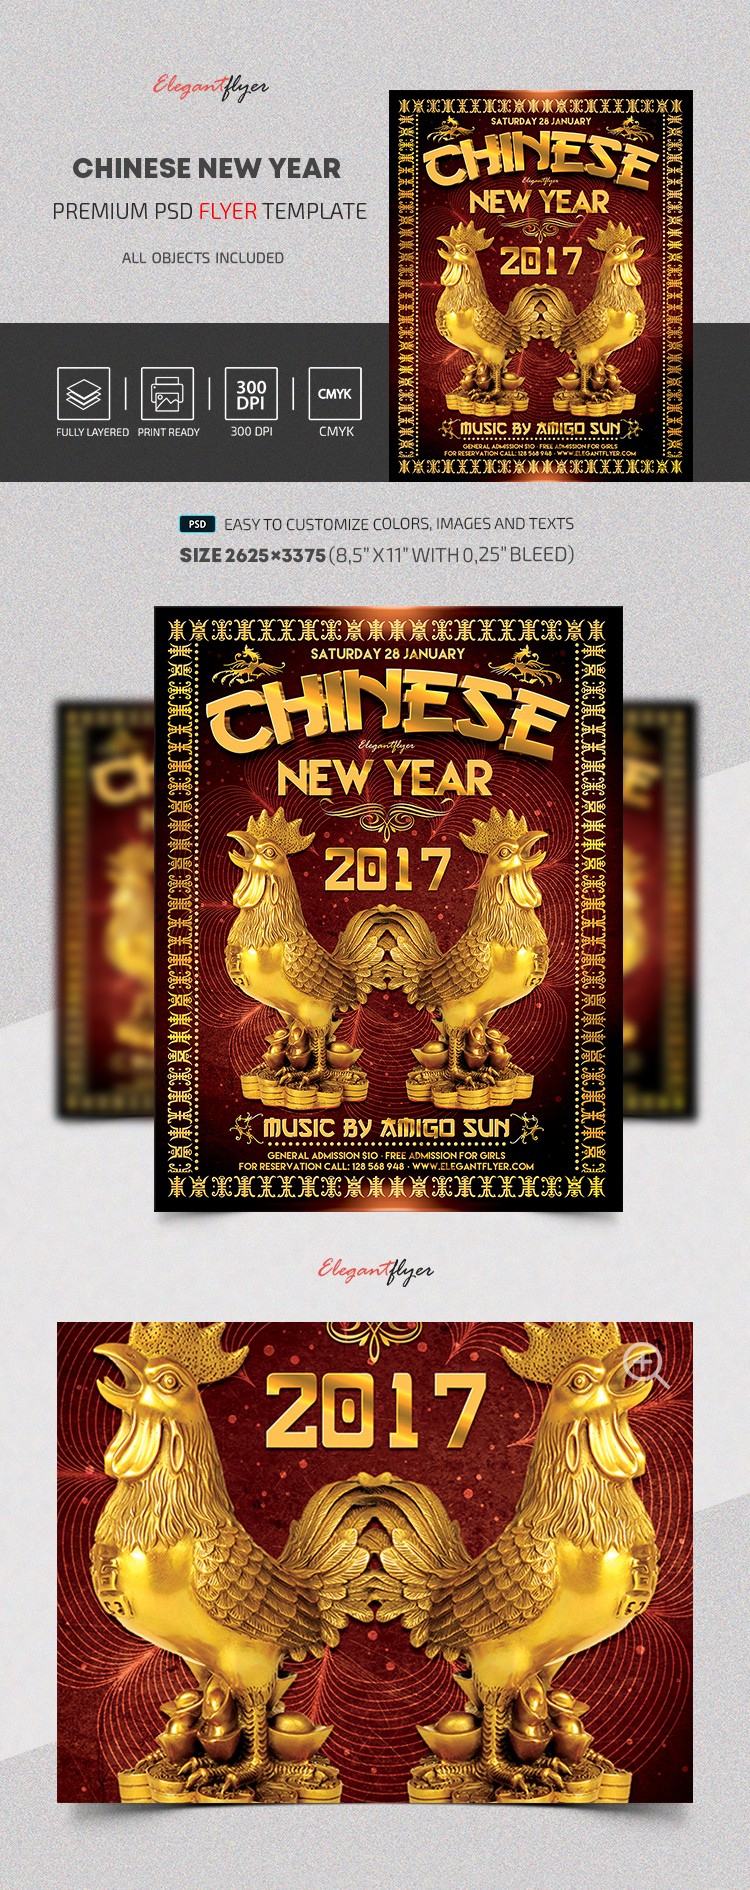 Chińska impreza z okazji chińskiego Nowego Roku 2017 by ElegantFlyer